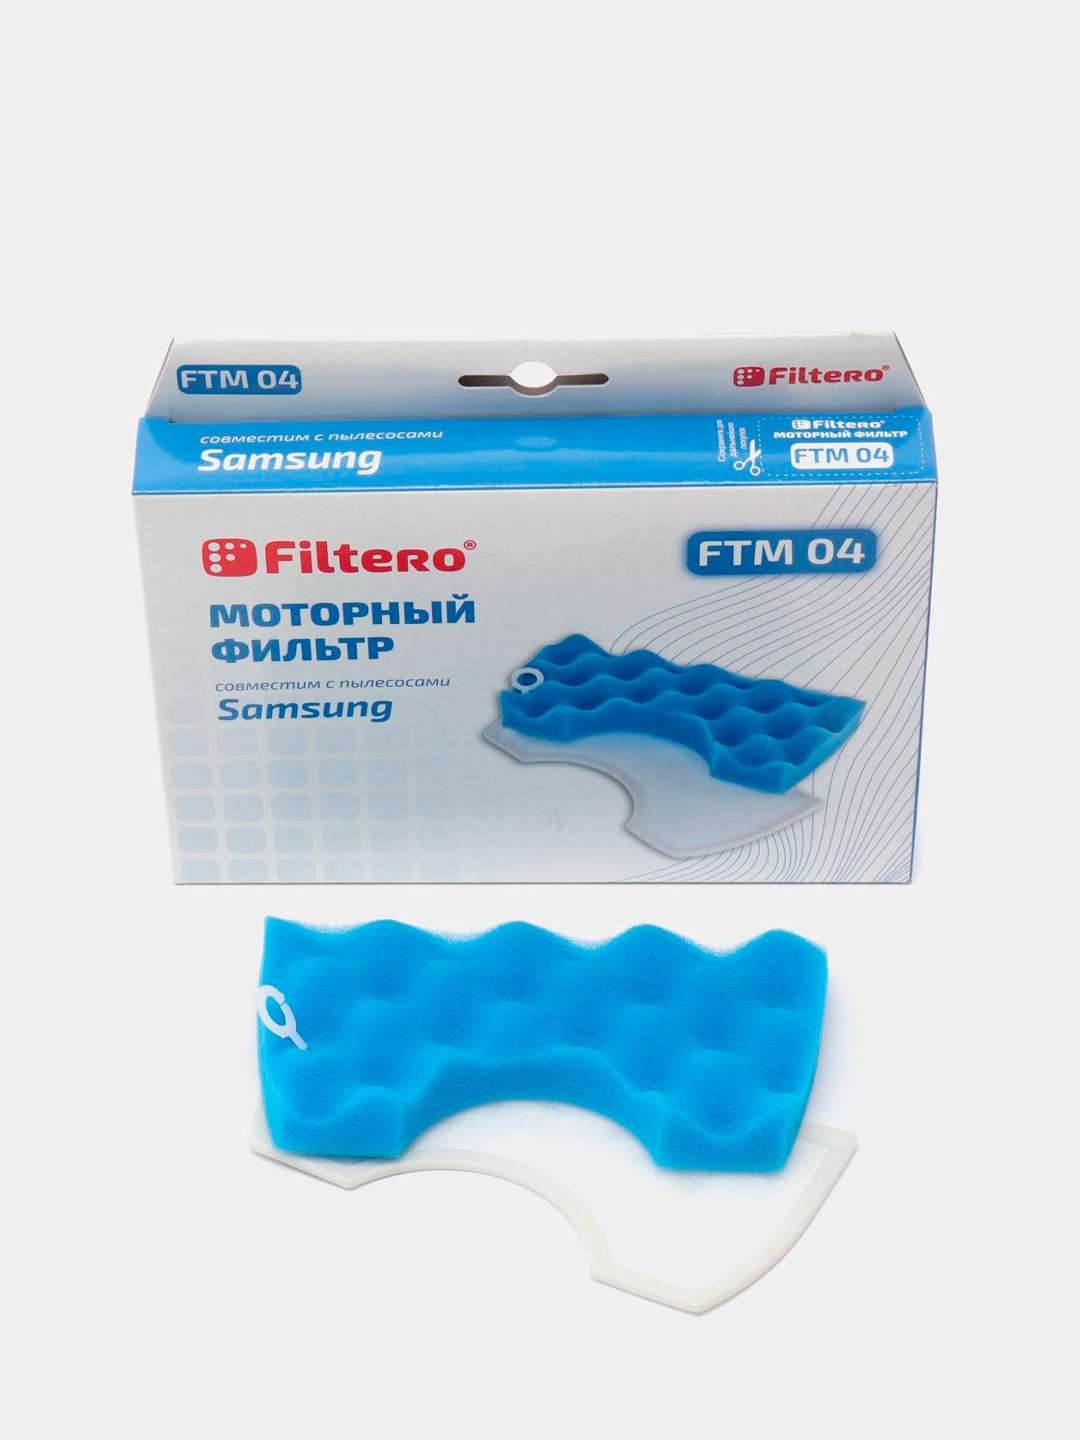  моторных фильтров Filtero FTM 04 для пылесосов Samsung за 595 .